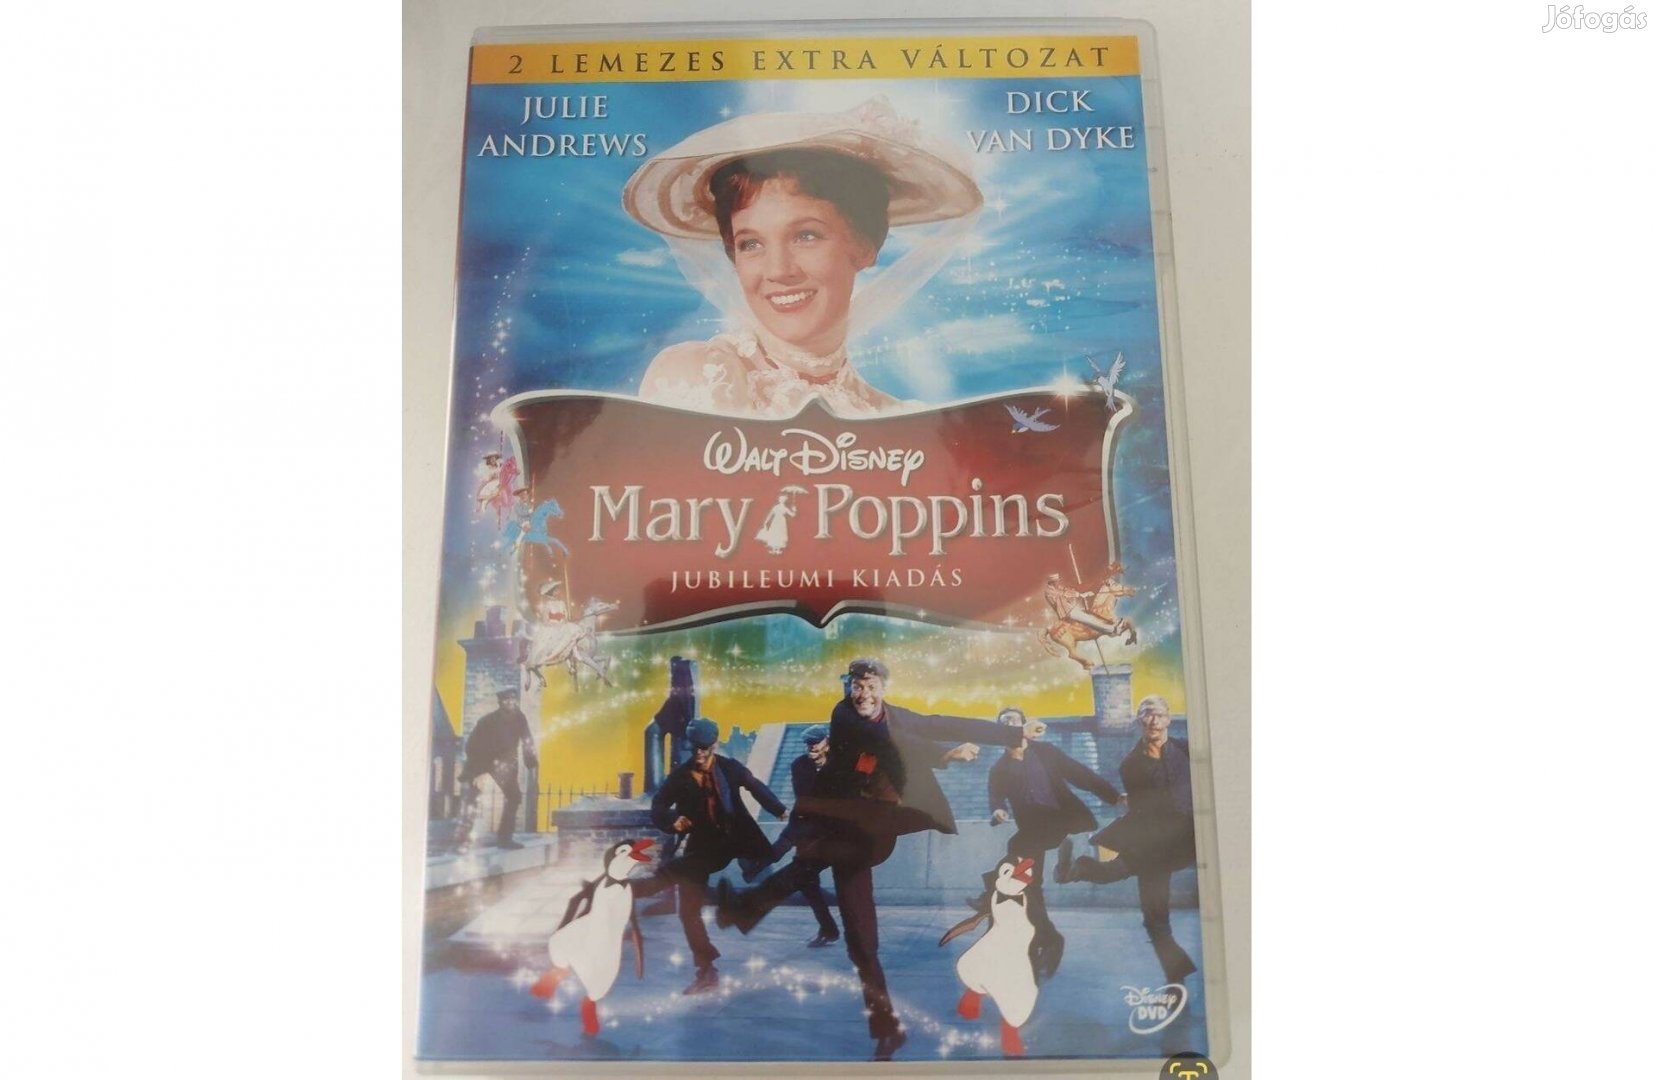 Mary Poppins (jubileumi kiadás, 2 lemezes extra változat)